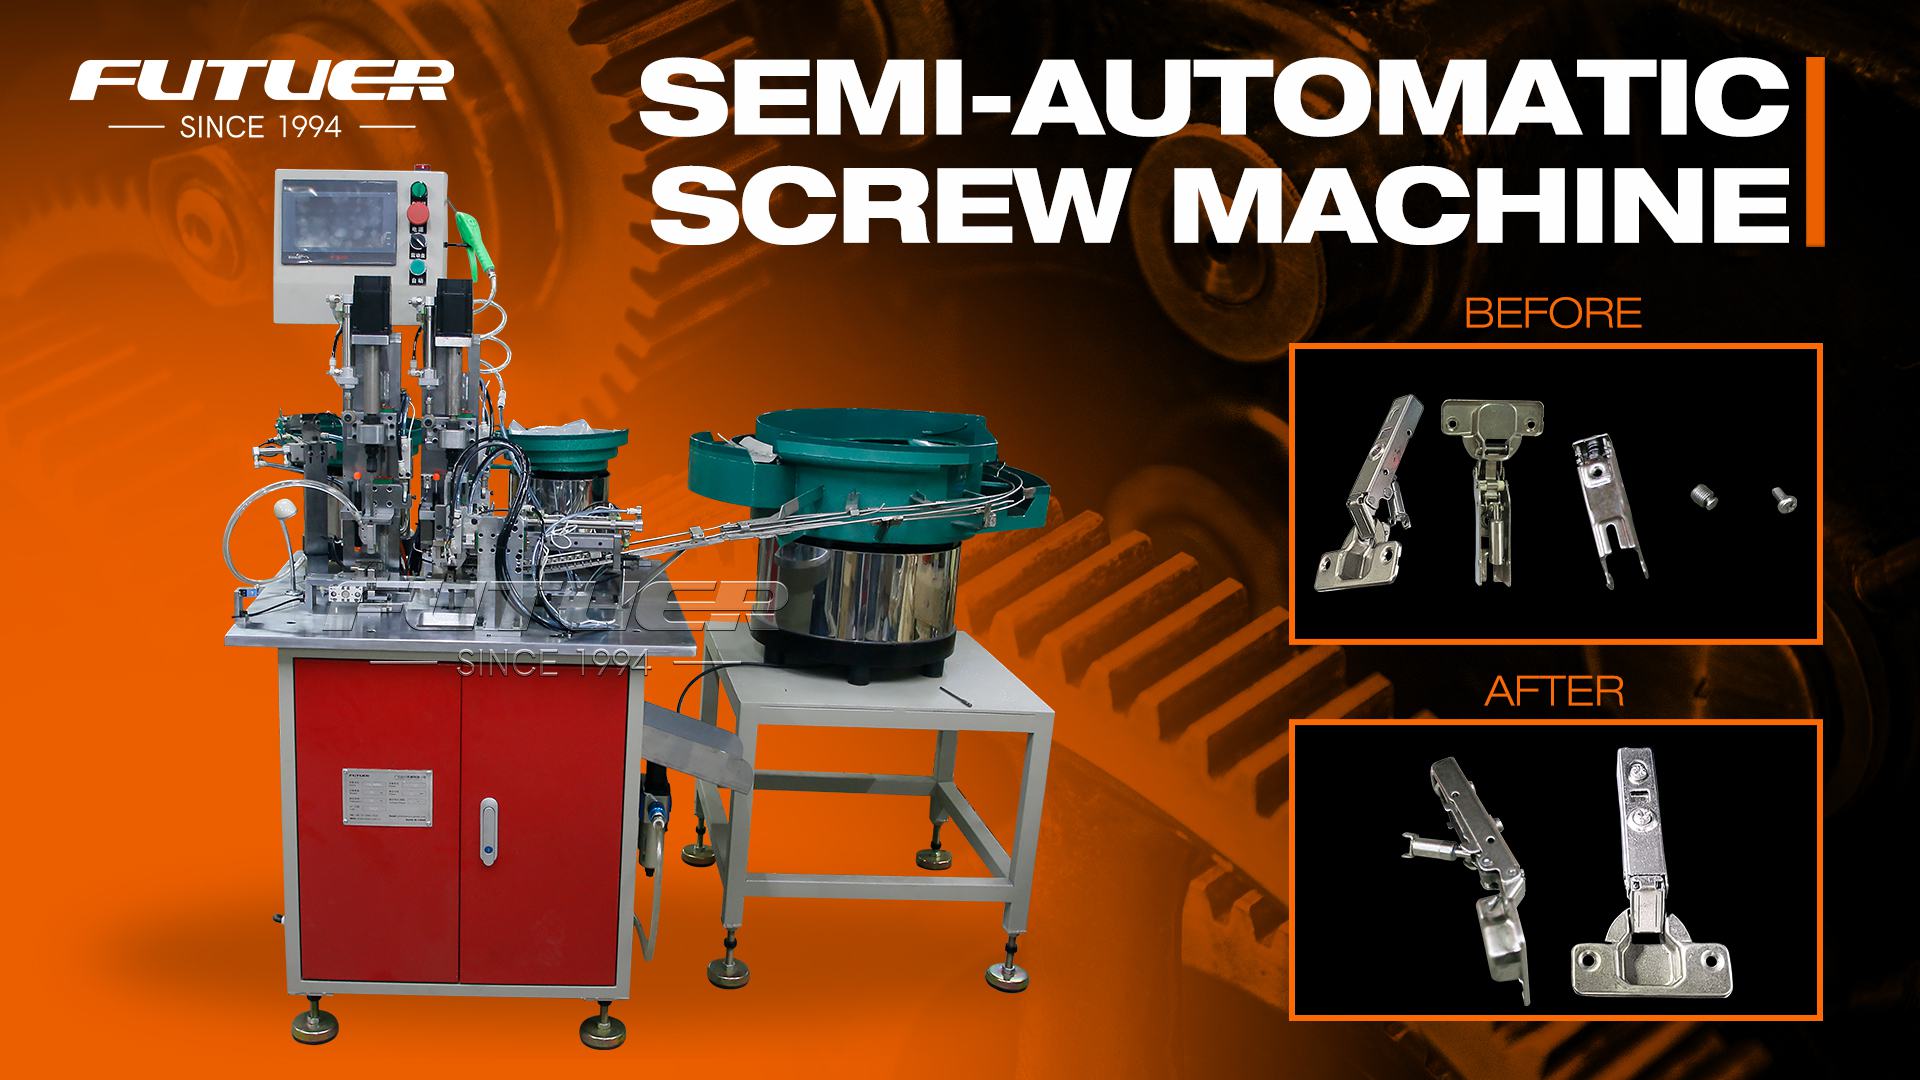 Semi-automatic screw machine